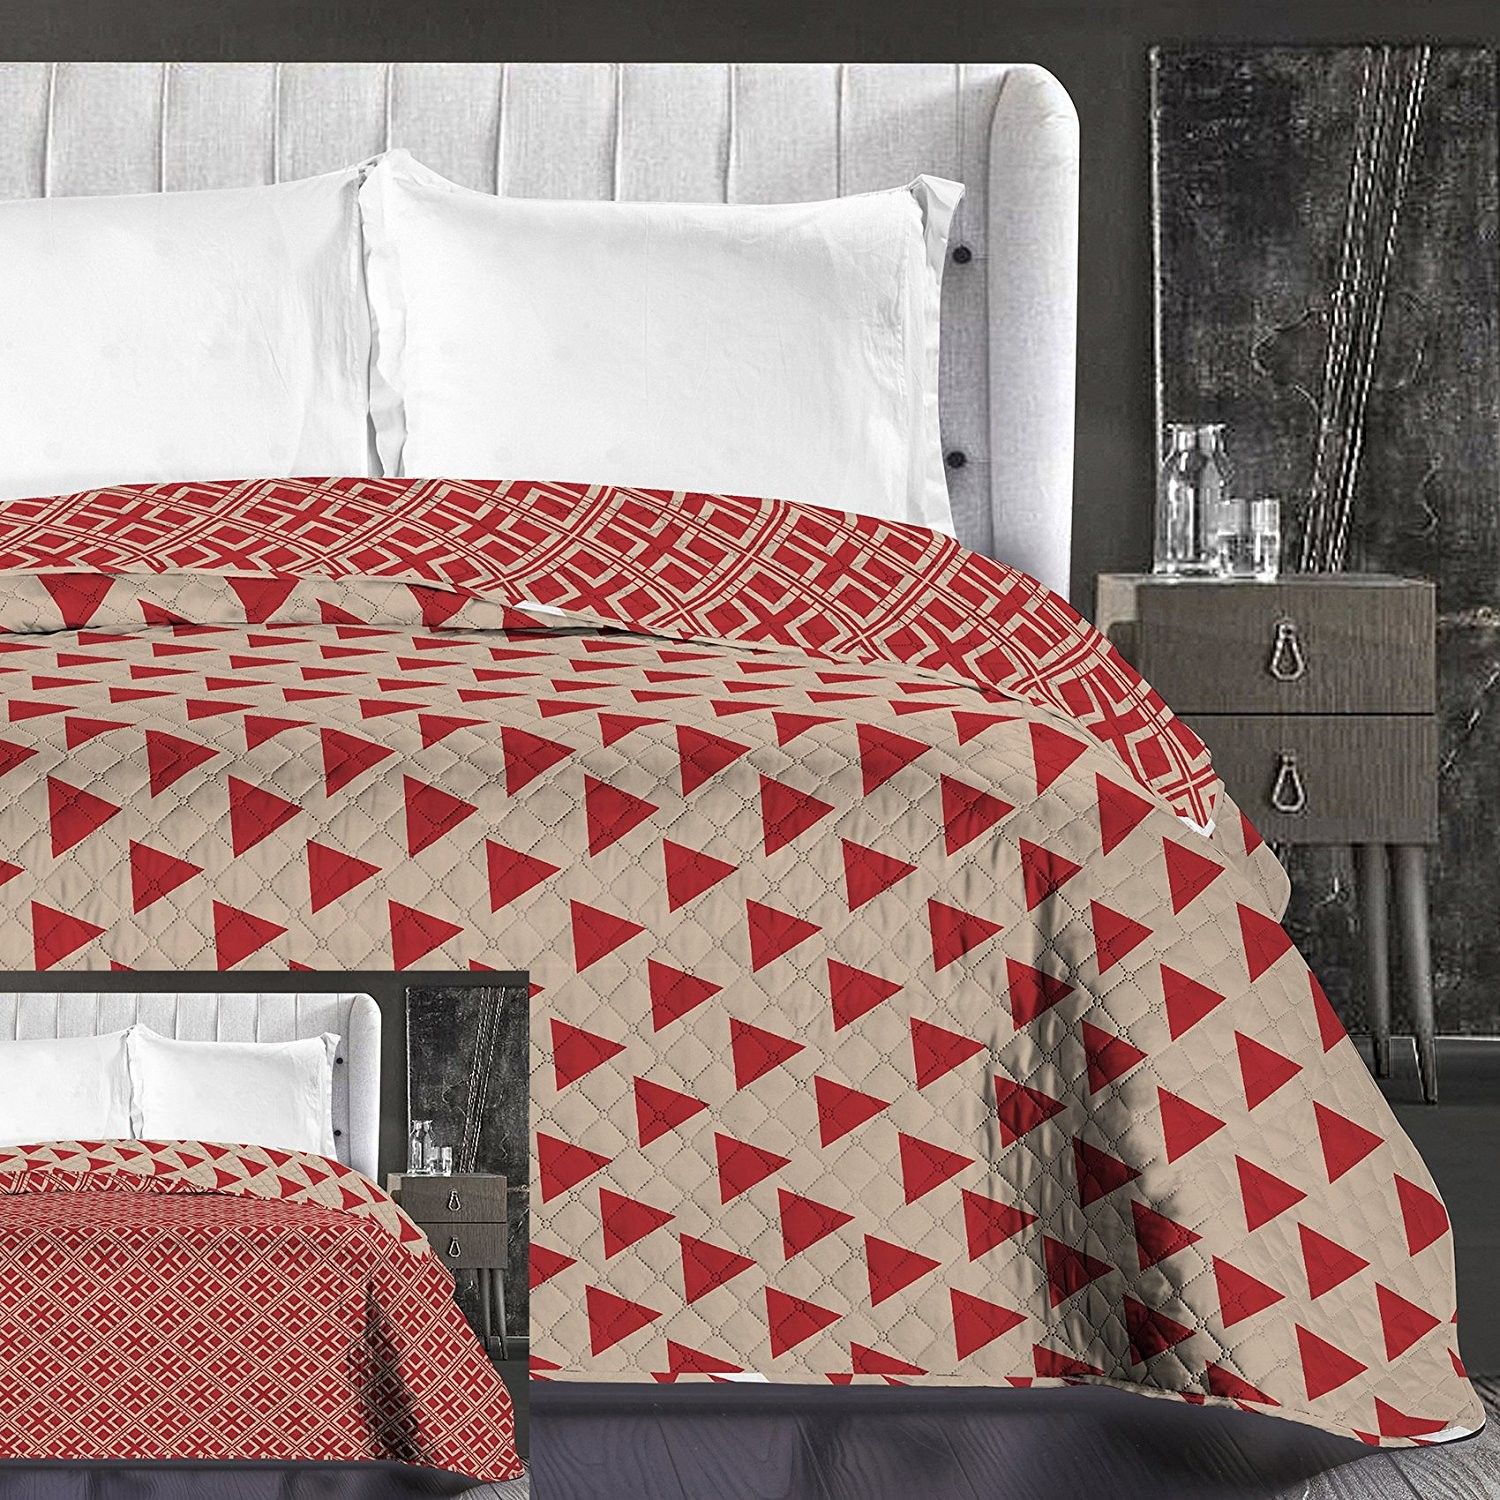 DomTextilu Luxusné béžové prehozy na posteľ obojstranné Šírka: 220 cm | Dĺžka: 240 cm 8001-21833